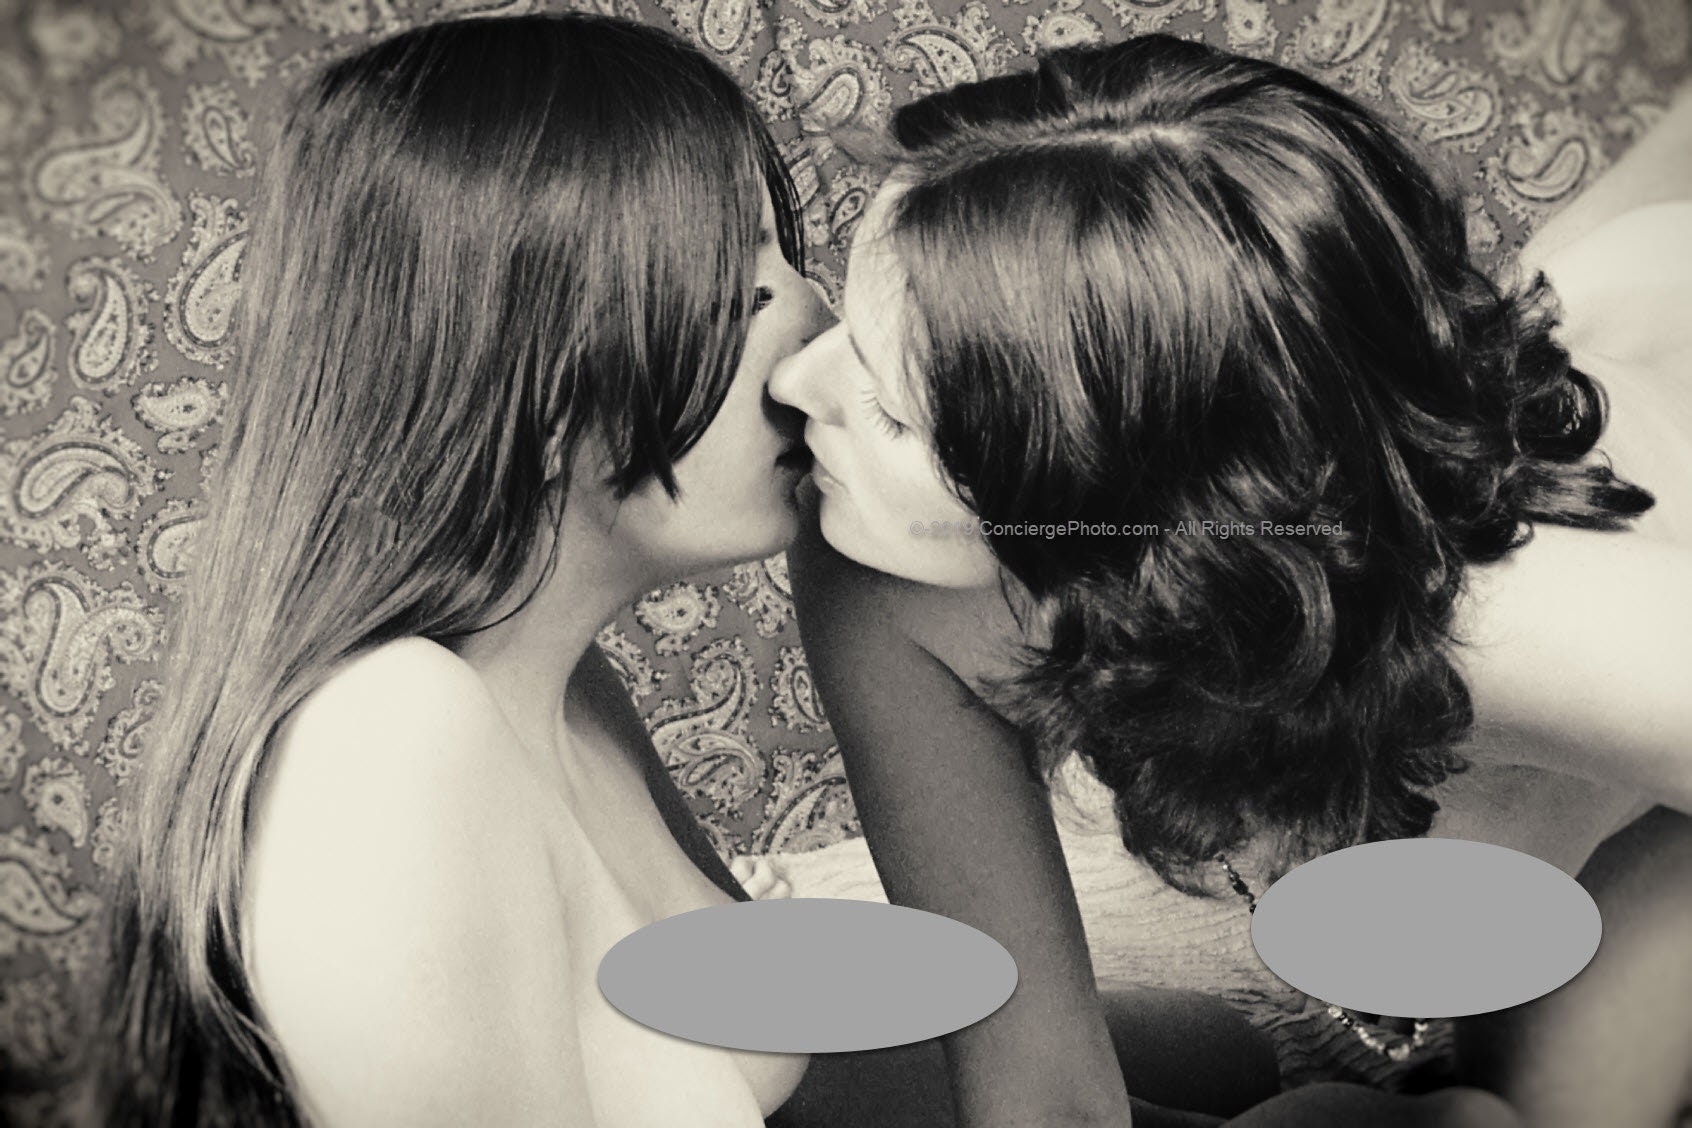 Vintage Mature 1970s Risque Photo 8x12 Bisexual Lesbian Couple pic